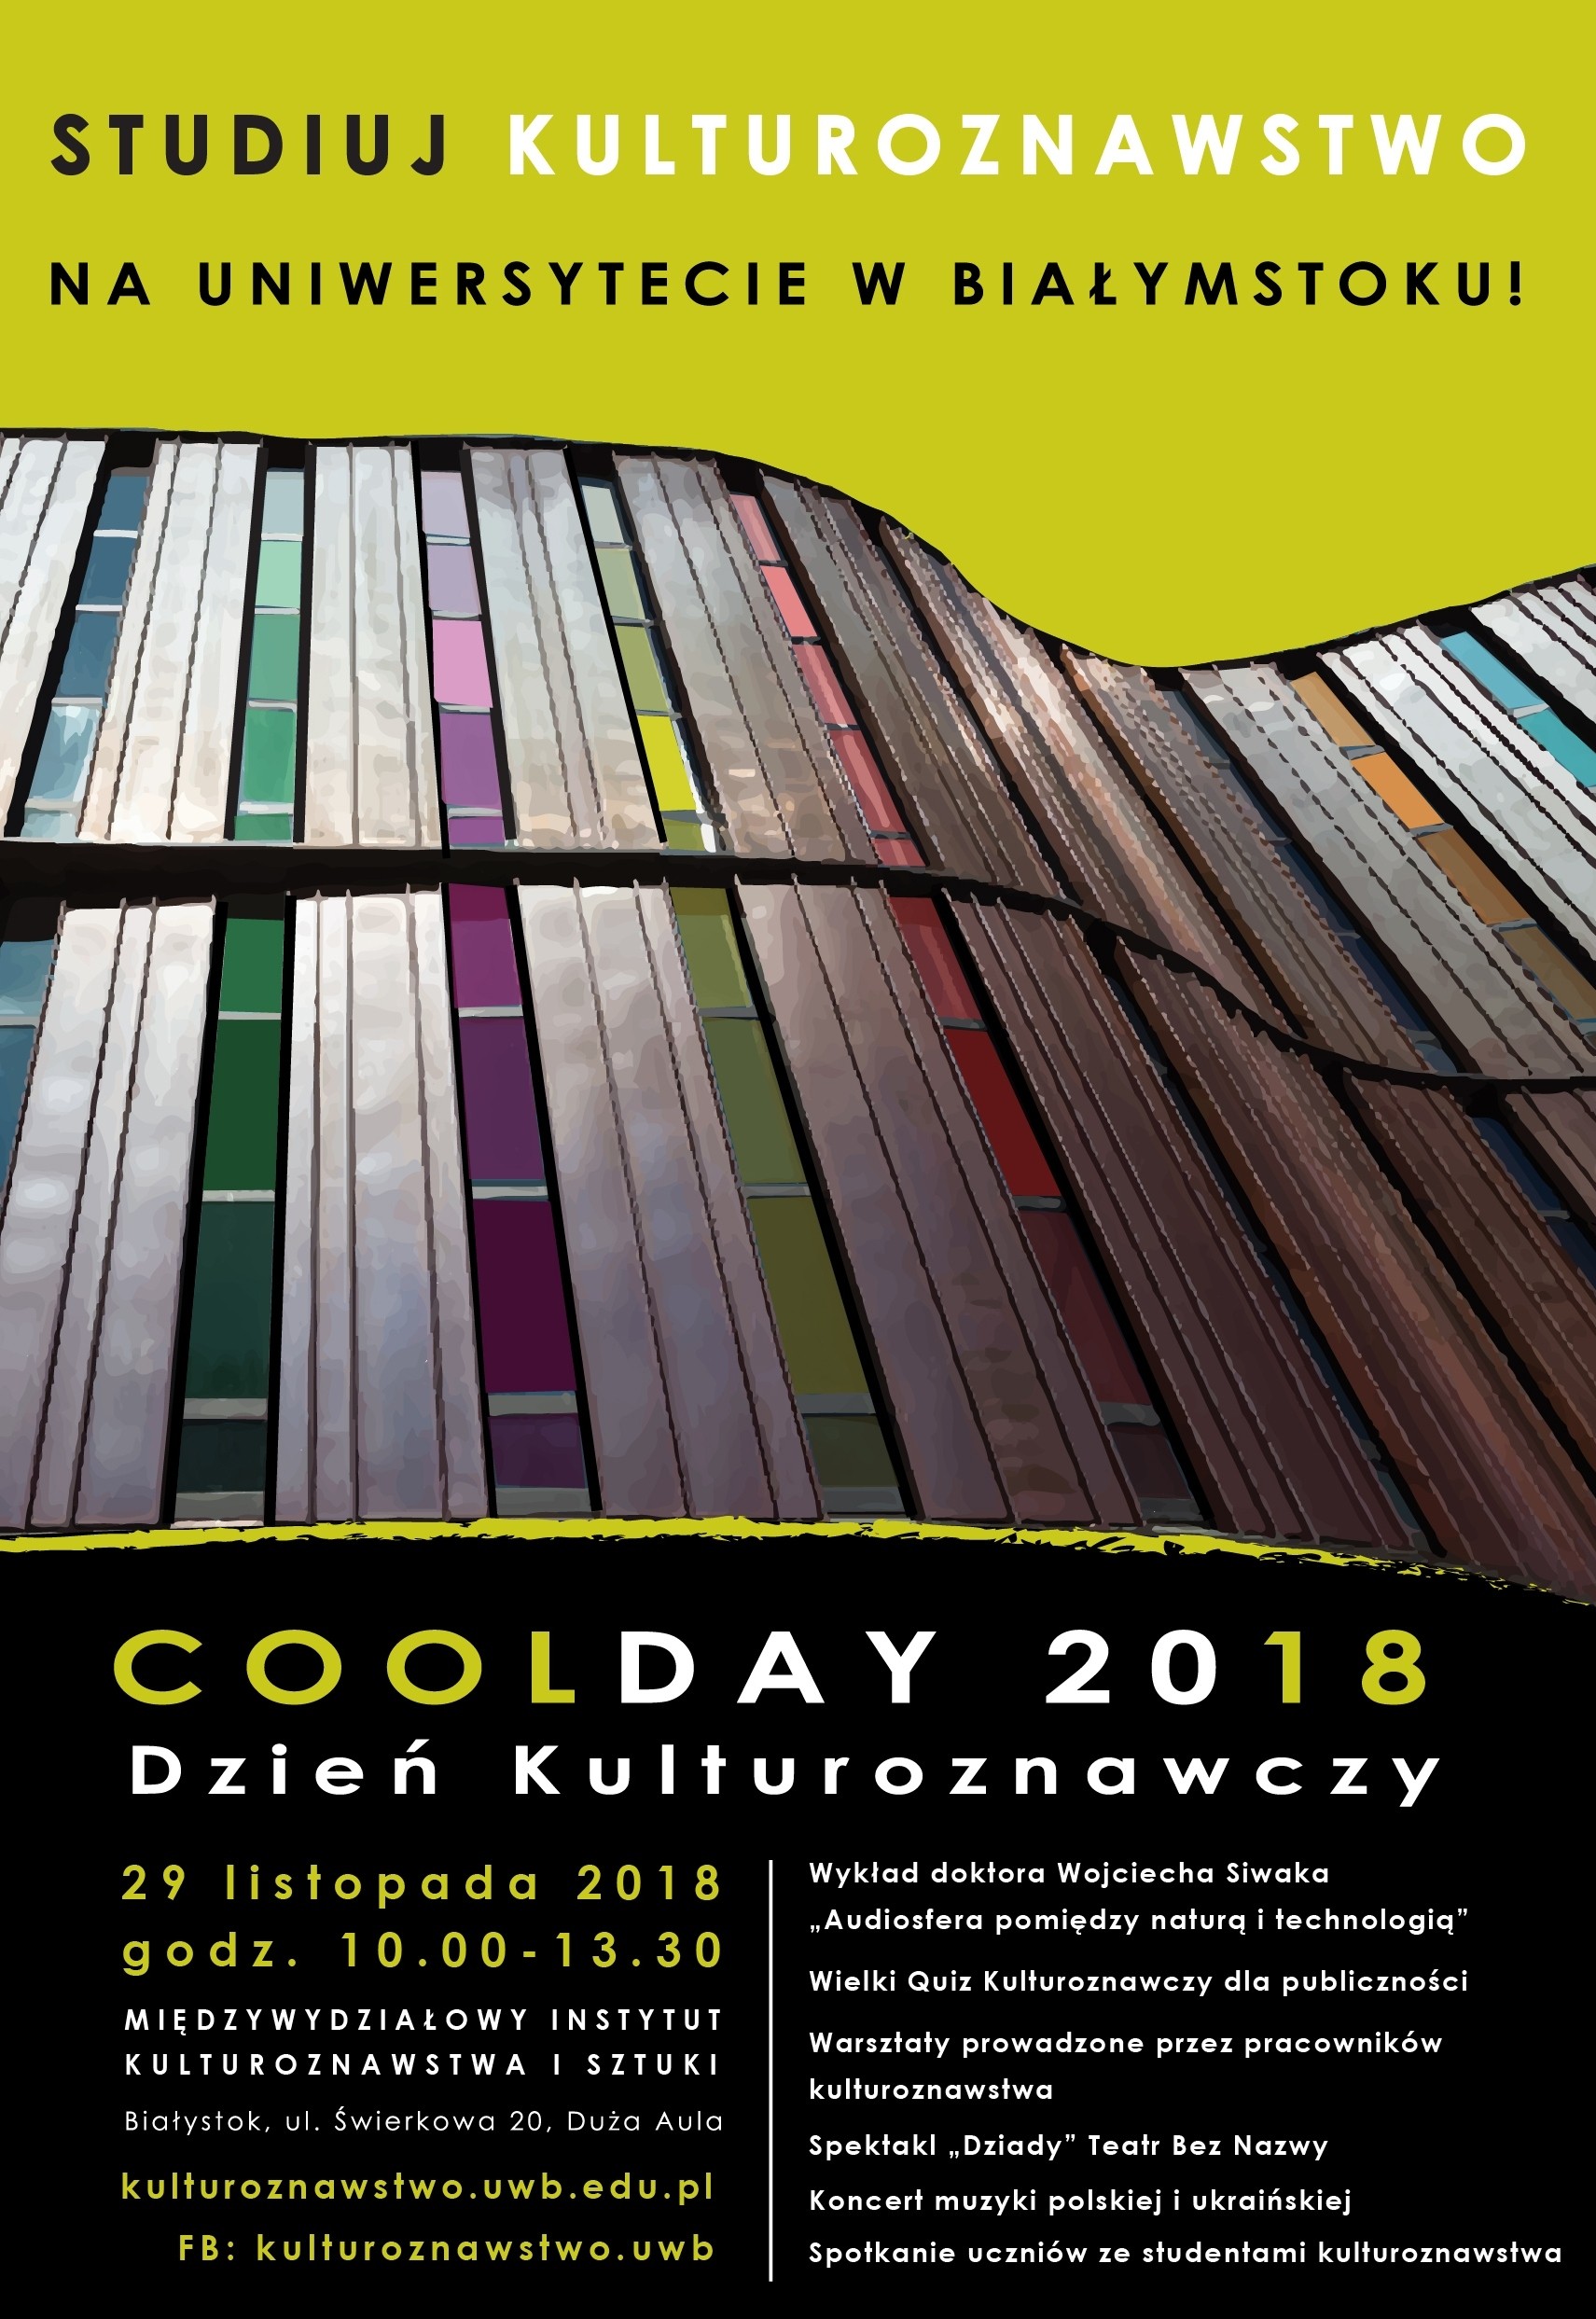 „COOLDAY 2018” czyli Dzień Kulturoznawczy na UwB